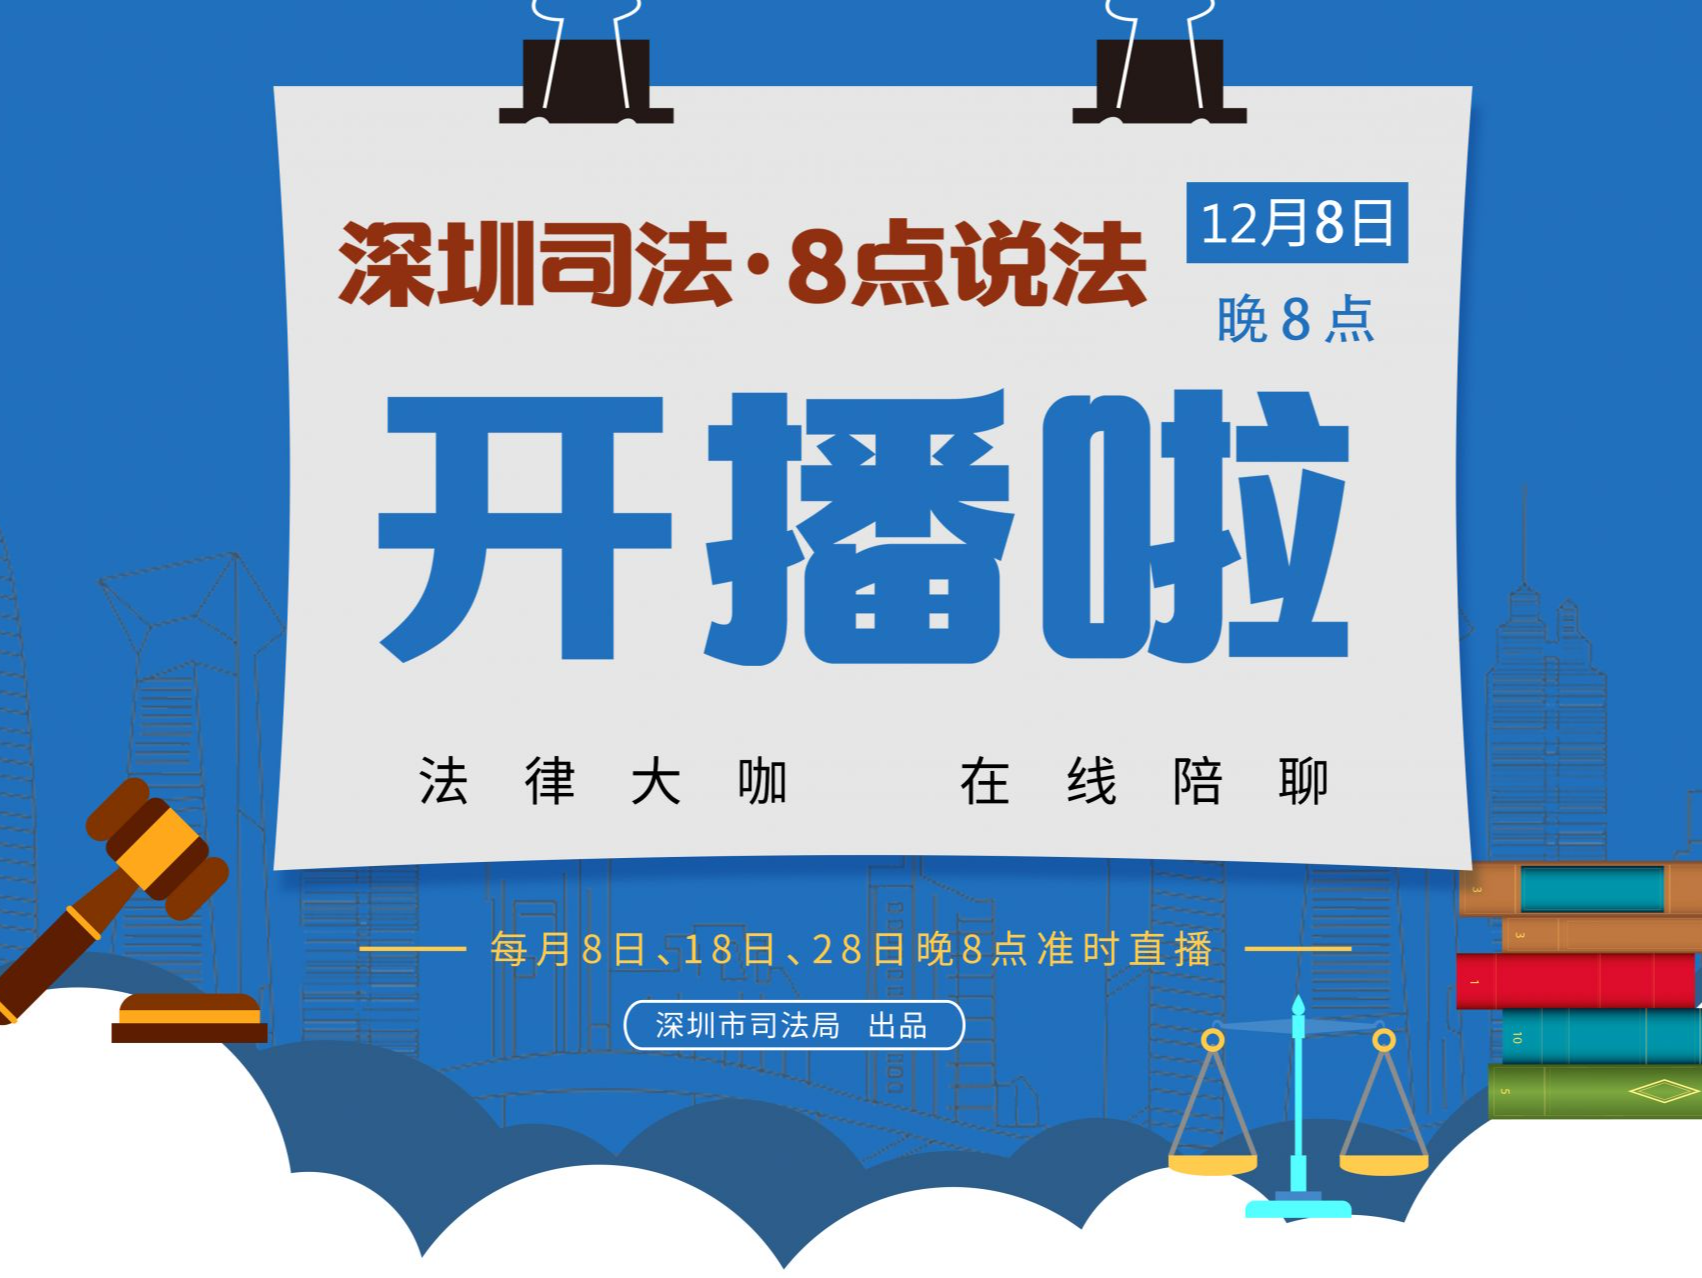 深圳市司法局首档法律直播节目将于12月8日晚8点上线